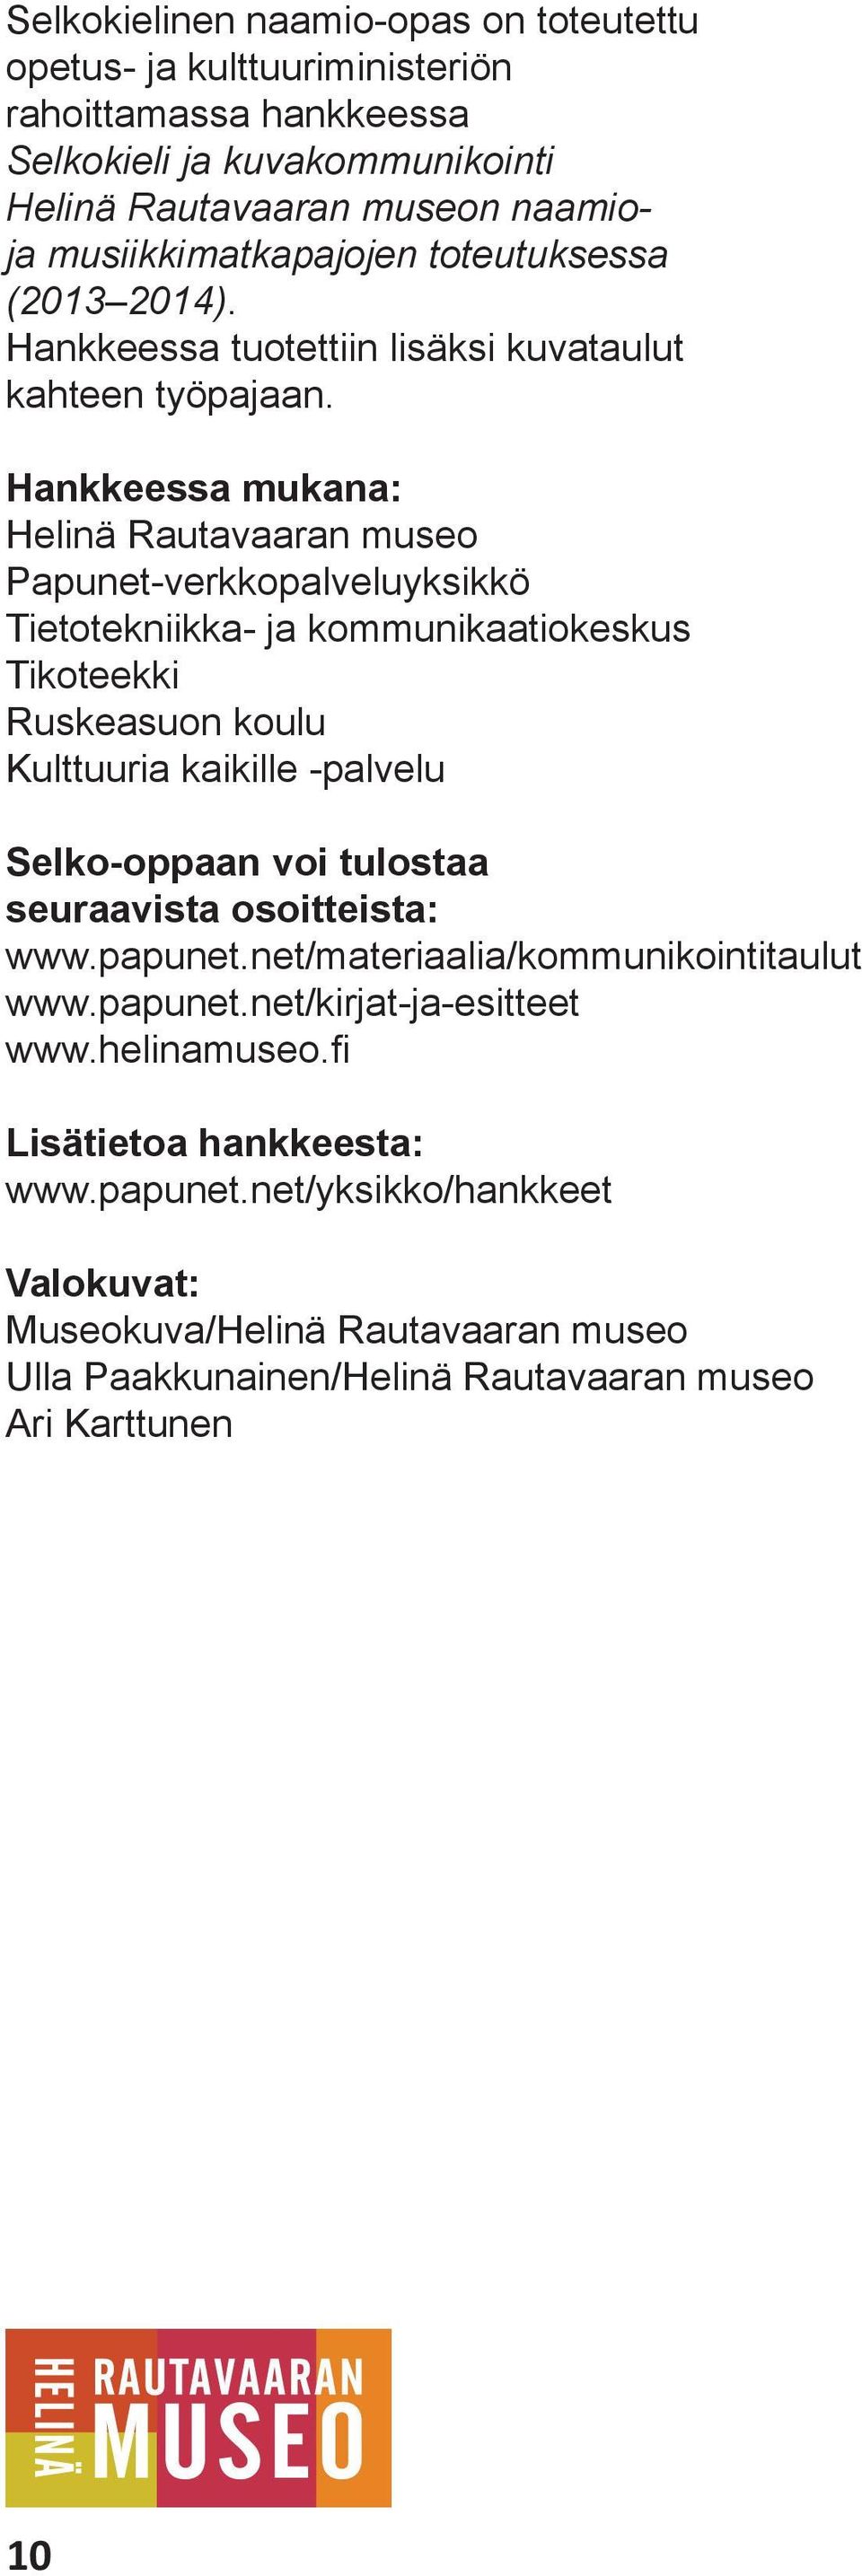 Hankkeessa mukana: Helinä Rautavaaran museo Papunet-verkkopalveluyksikkö Tietotekniikka- ja kommunikaatiokeskus Tikoteekki Ruskeasuon koulu Kulttuuria kaikille -palvelu Selko-oppaan voi